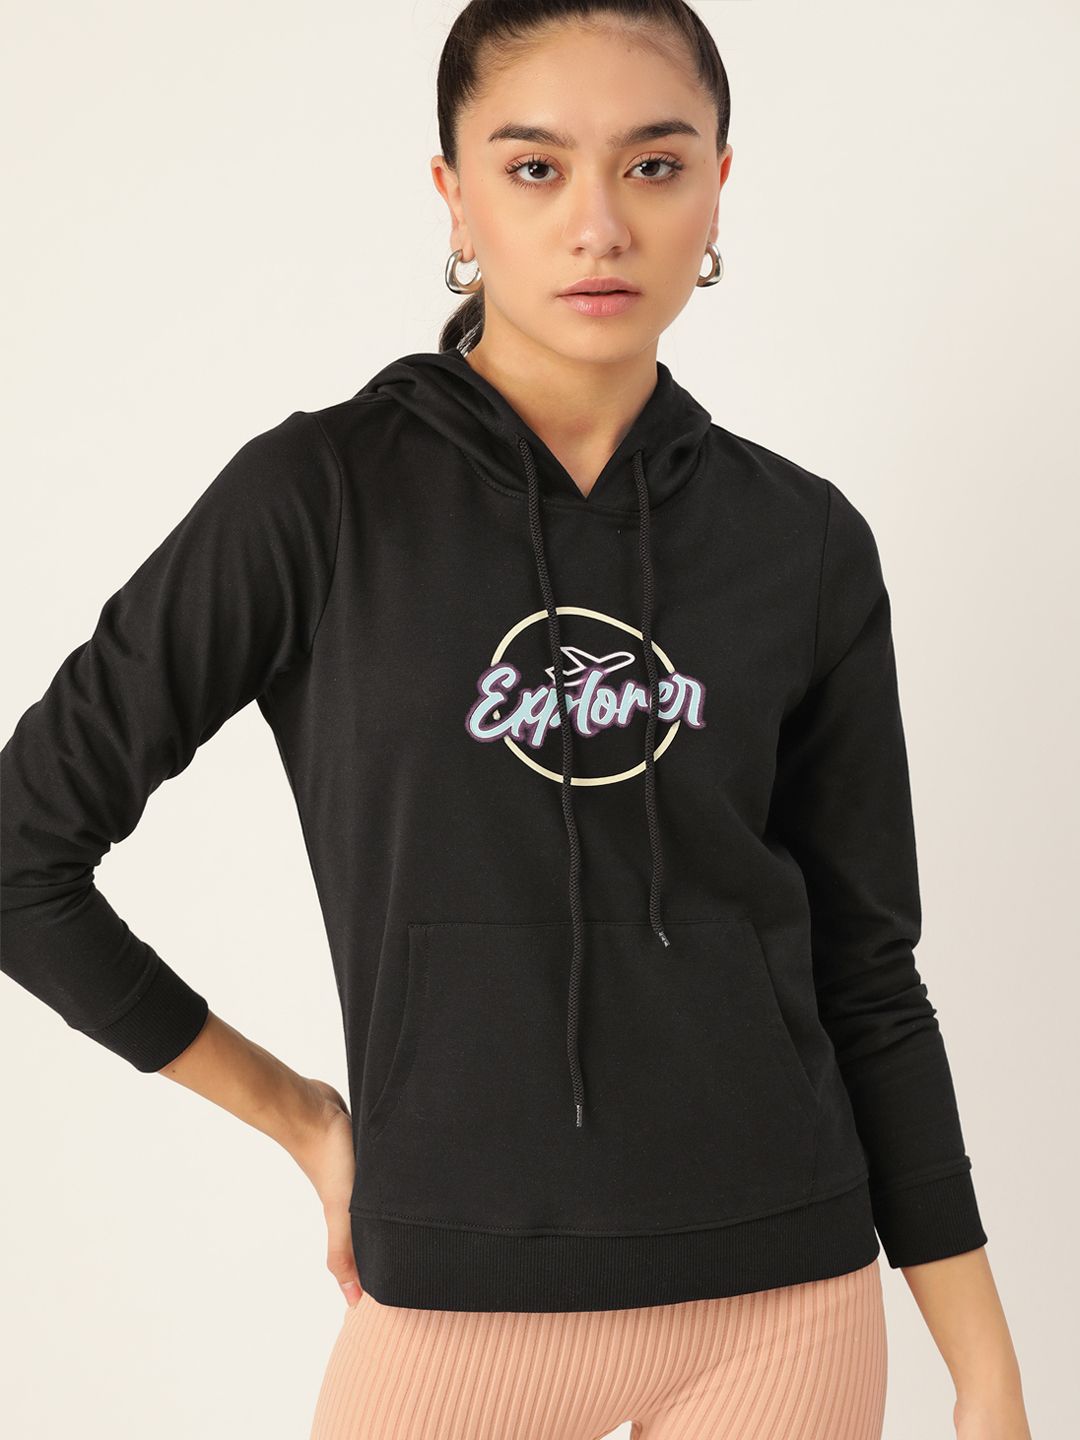 DressBerry Women Black Printed Hooded Sweatshirt Price in India